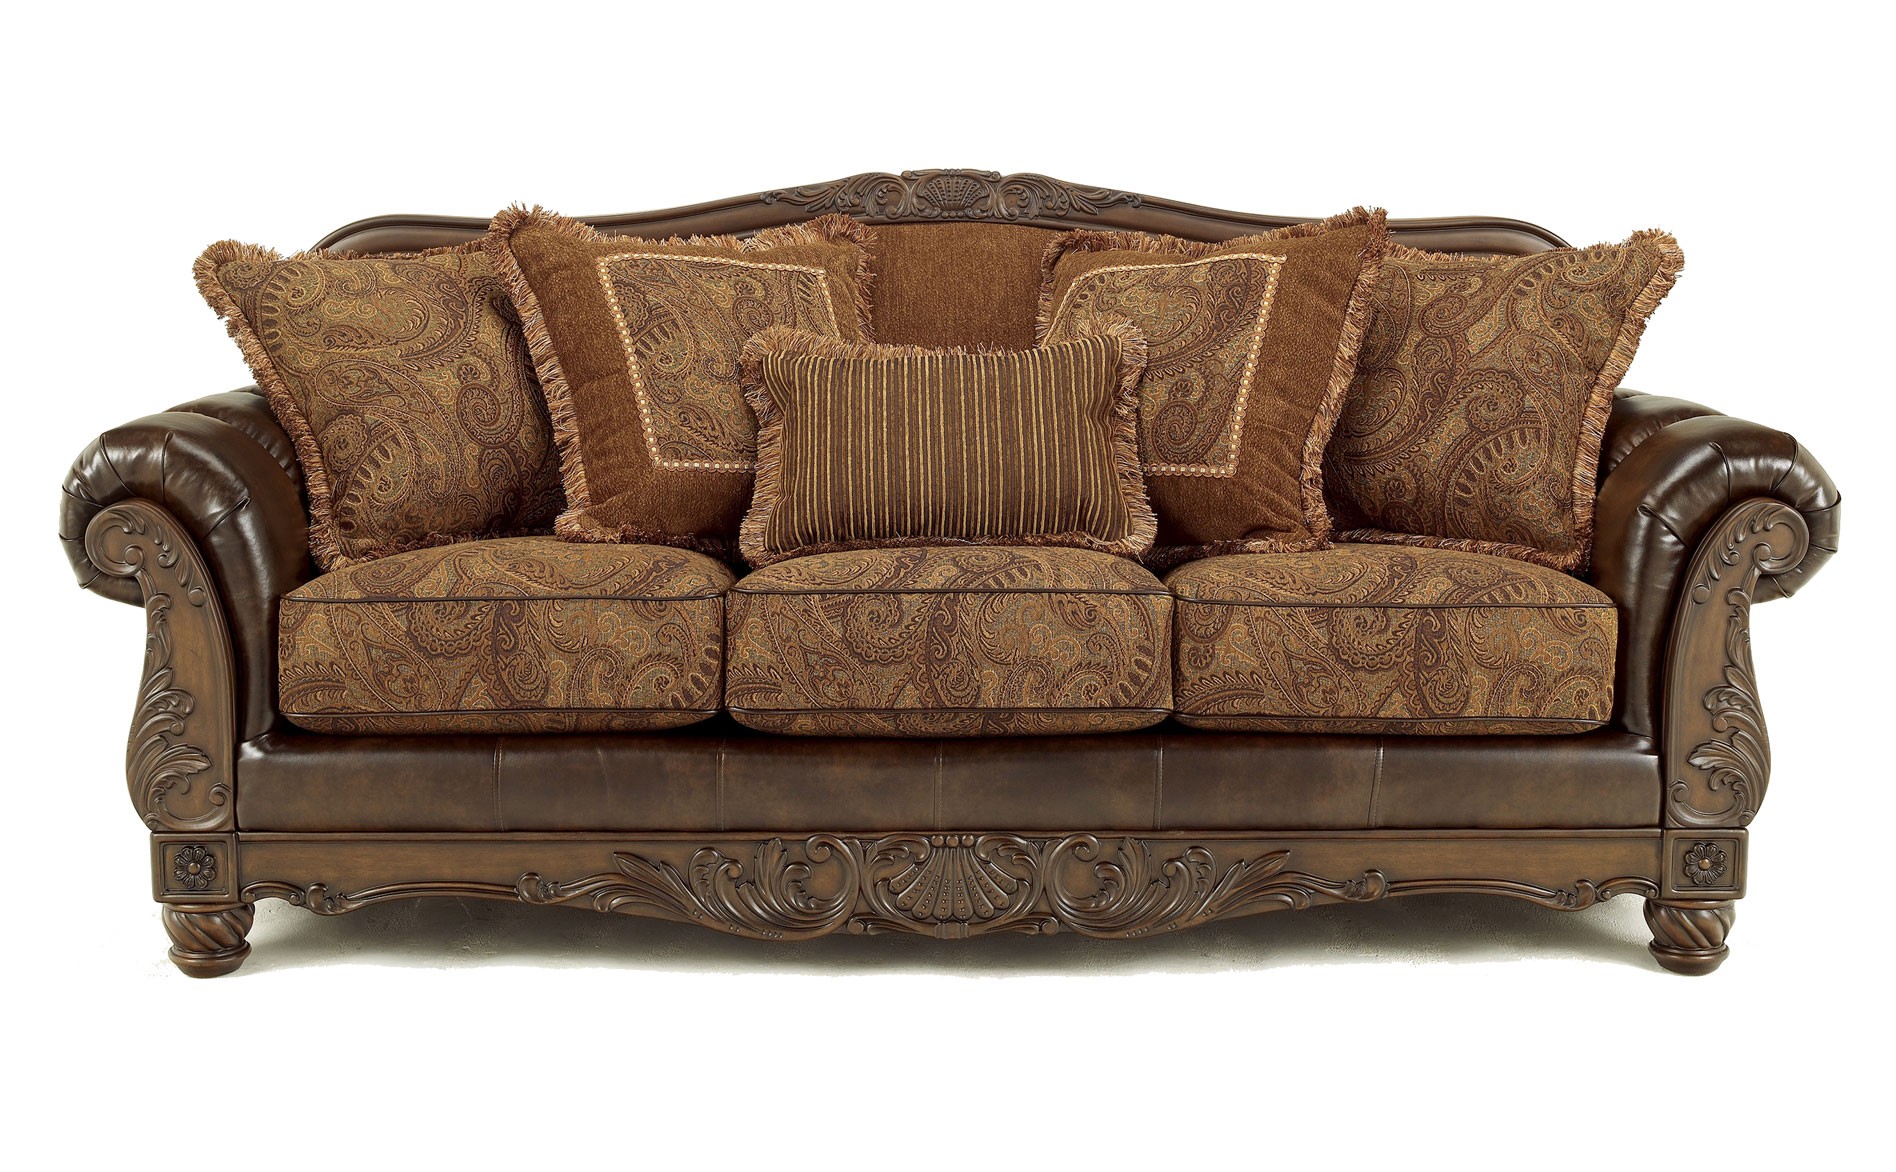 18 Beautiful Ashley Furniture Sofa Sets